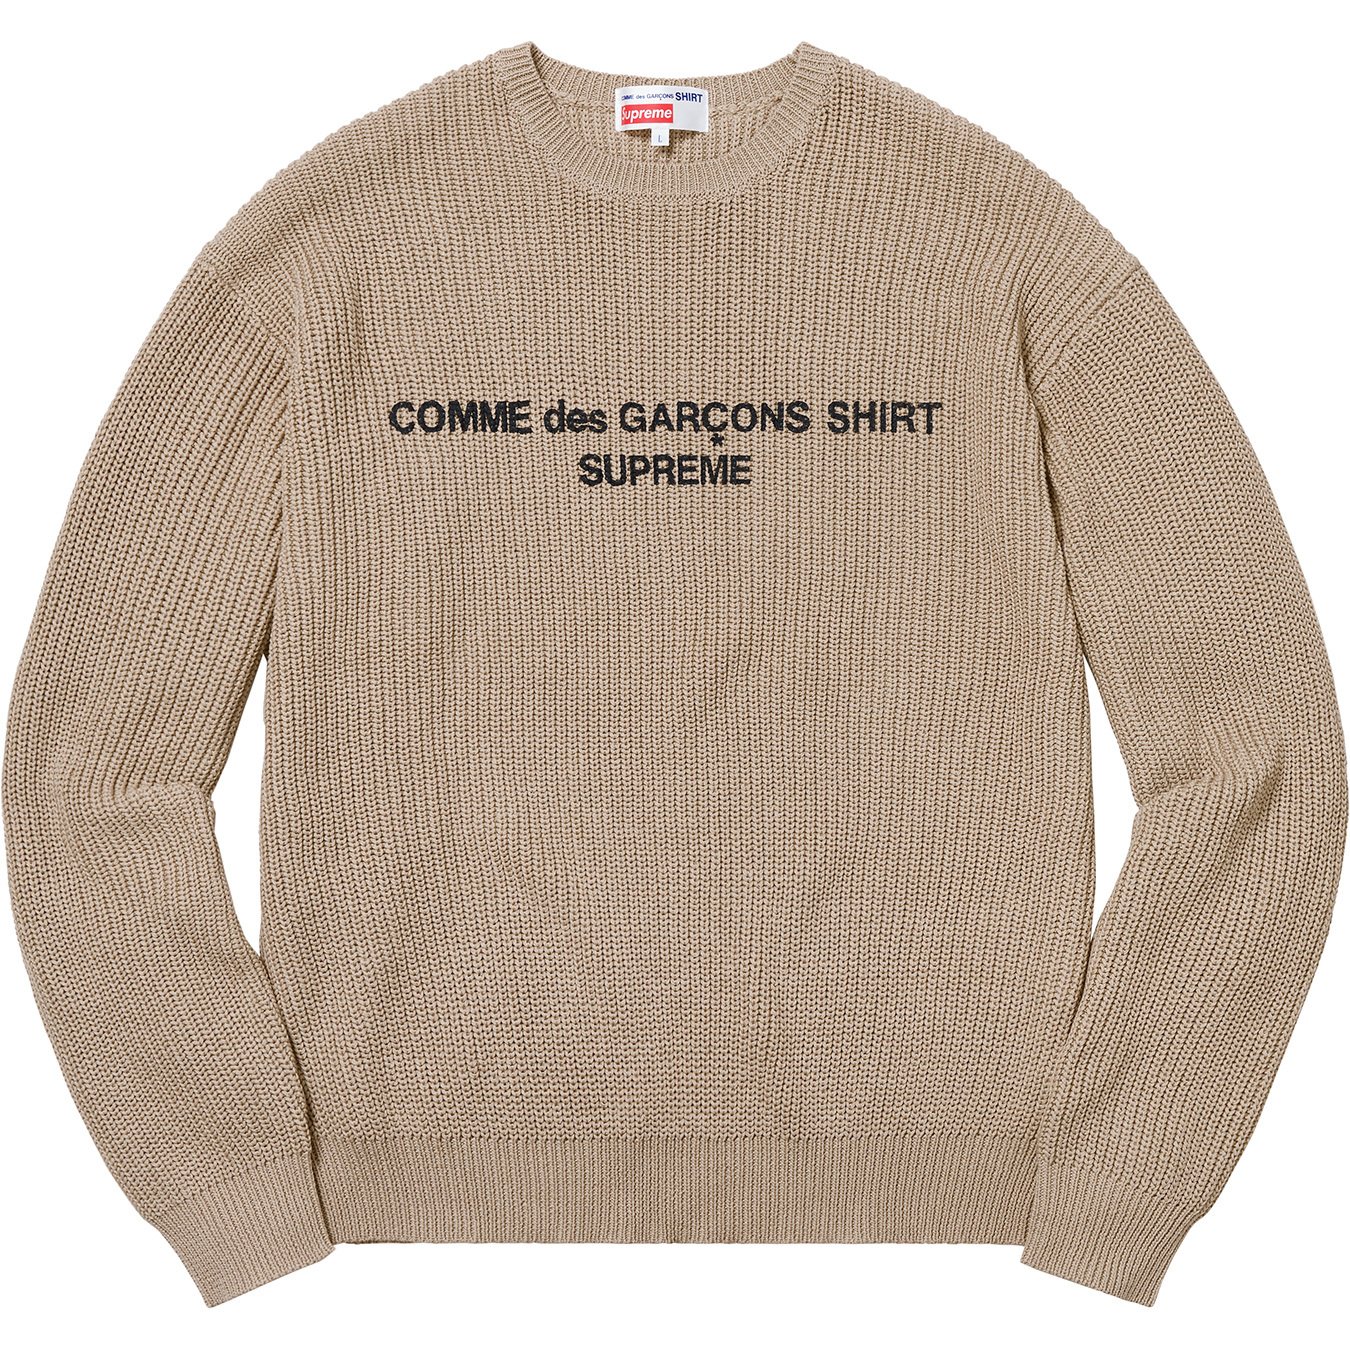 Supreme®/Comme des Garçons SHIRT® Sweater - Supreme Community